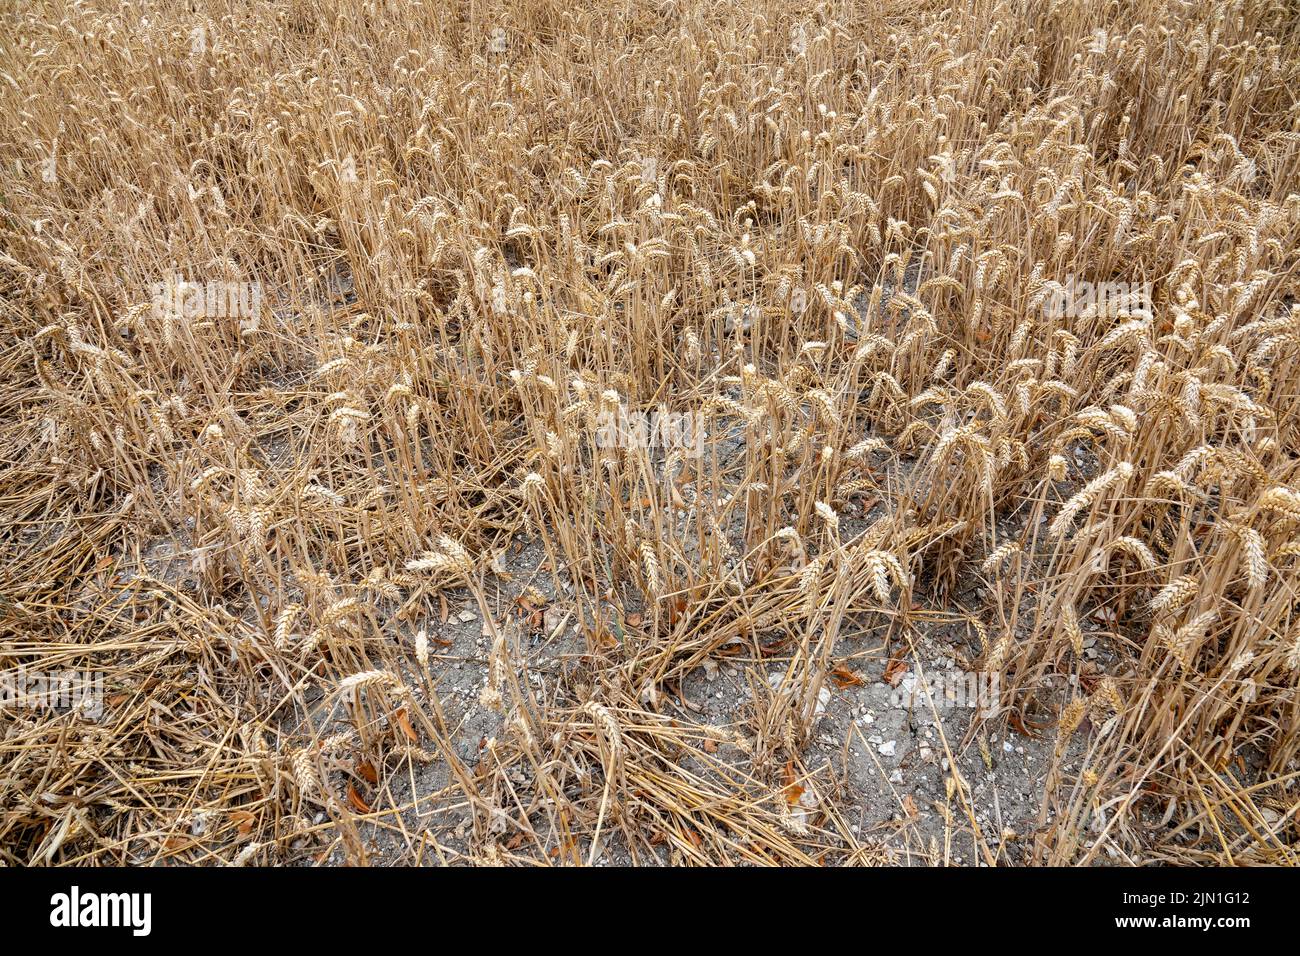 Una pequeña superficie de cosecha de trigo deficiente debido a la sequía Foto de stock